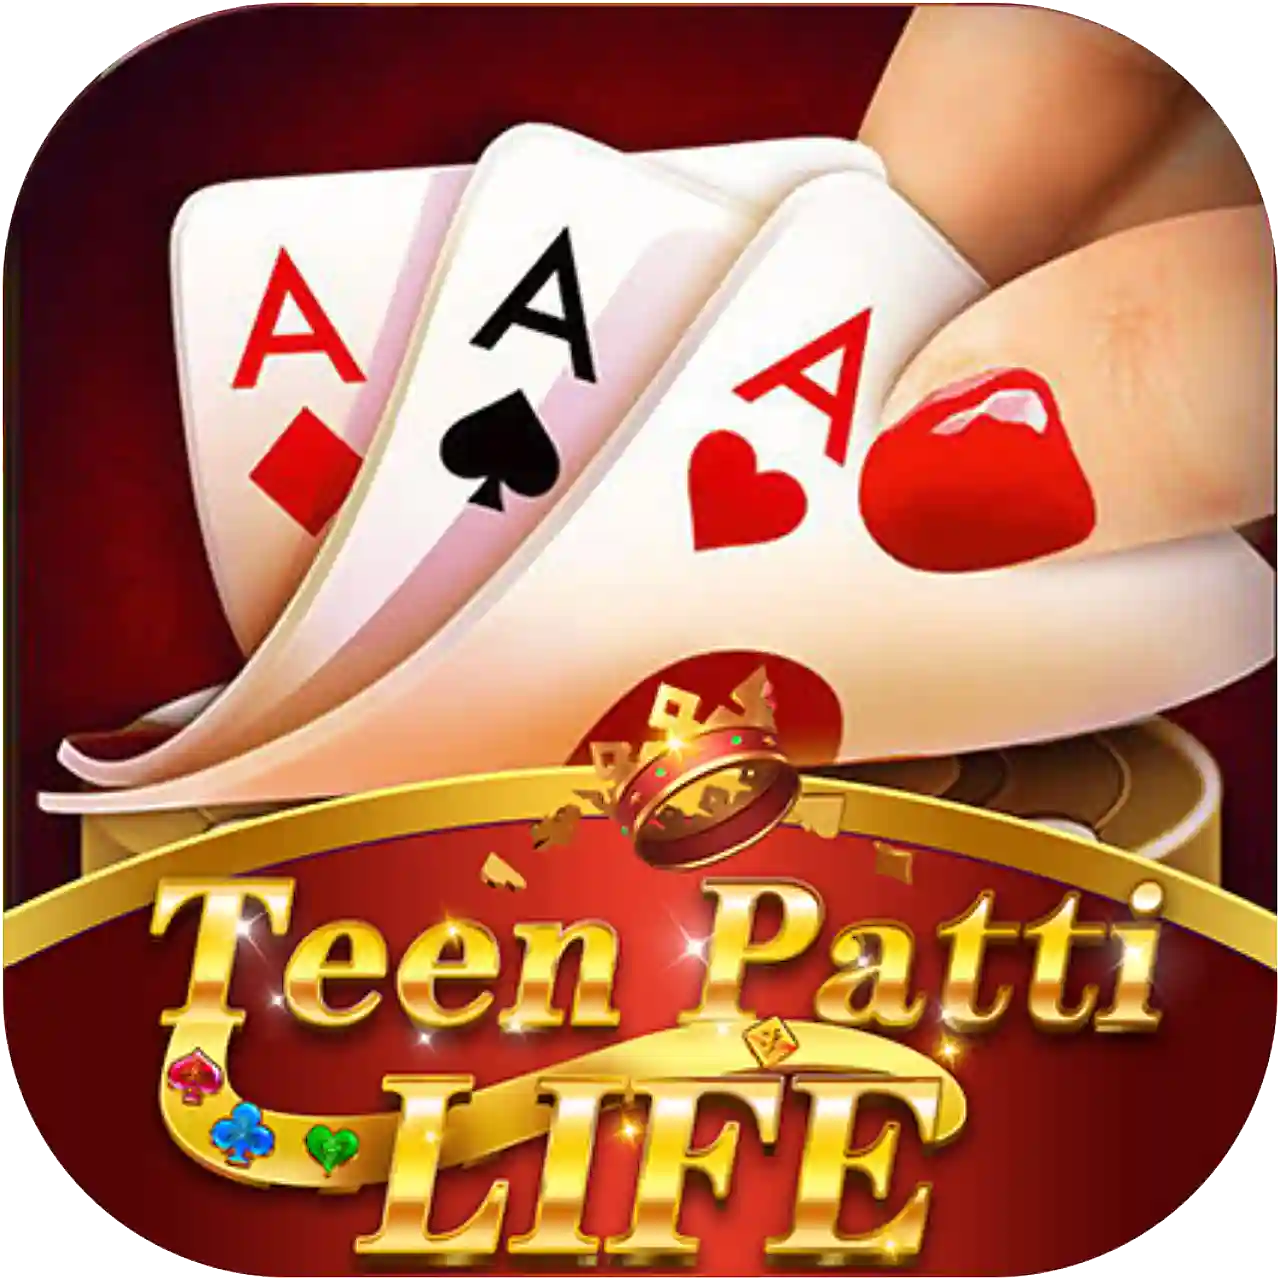 Teen Patti Life - Teen Patti Sea